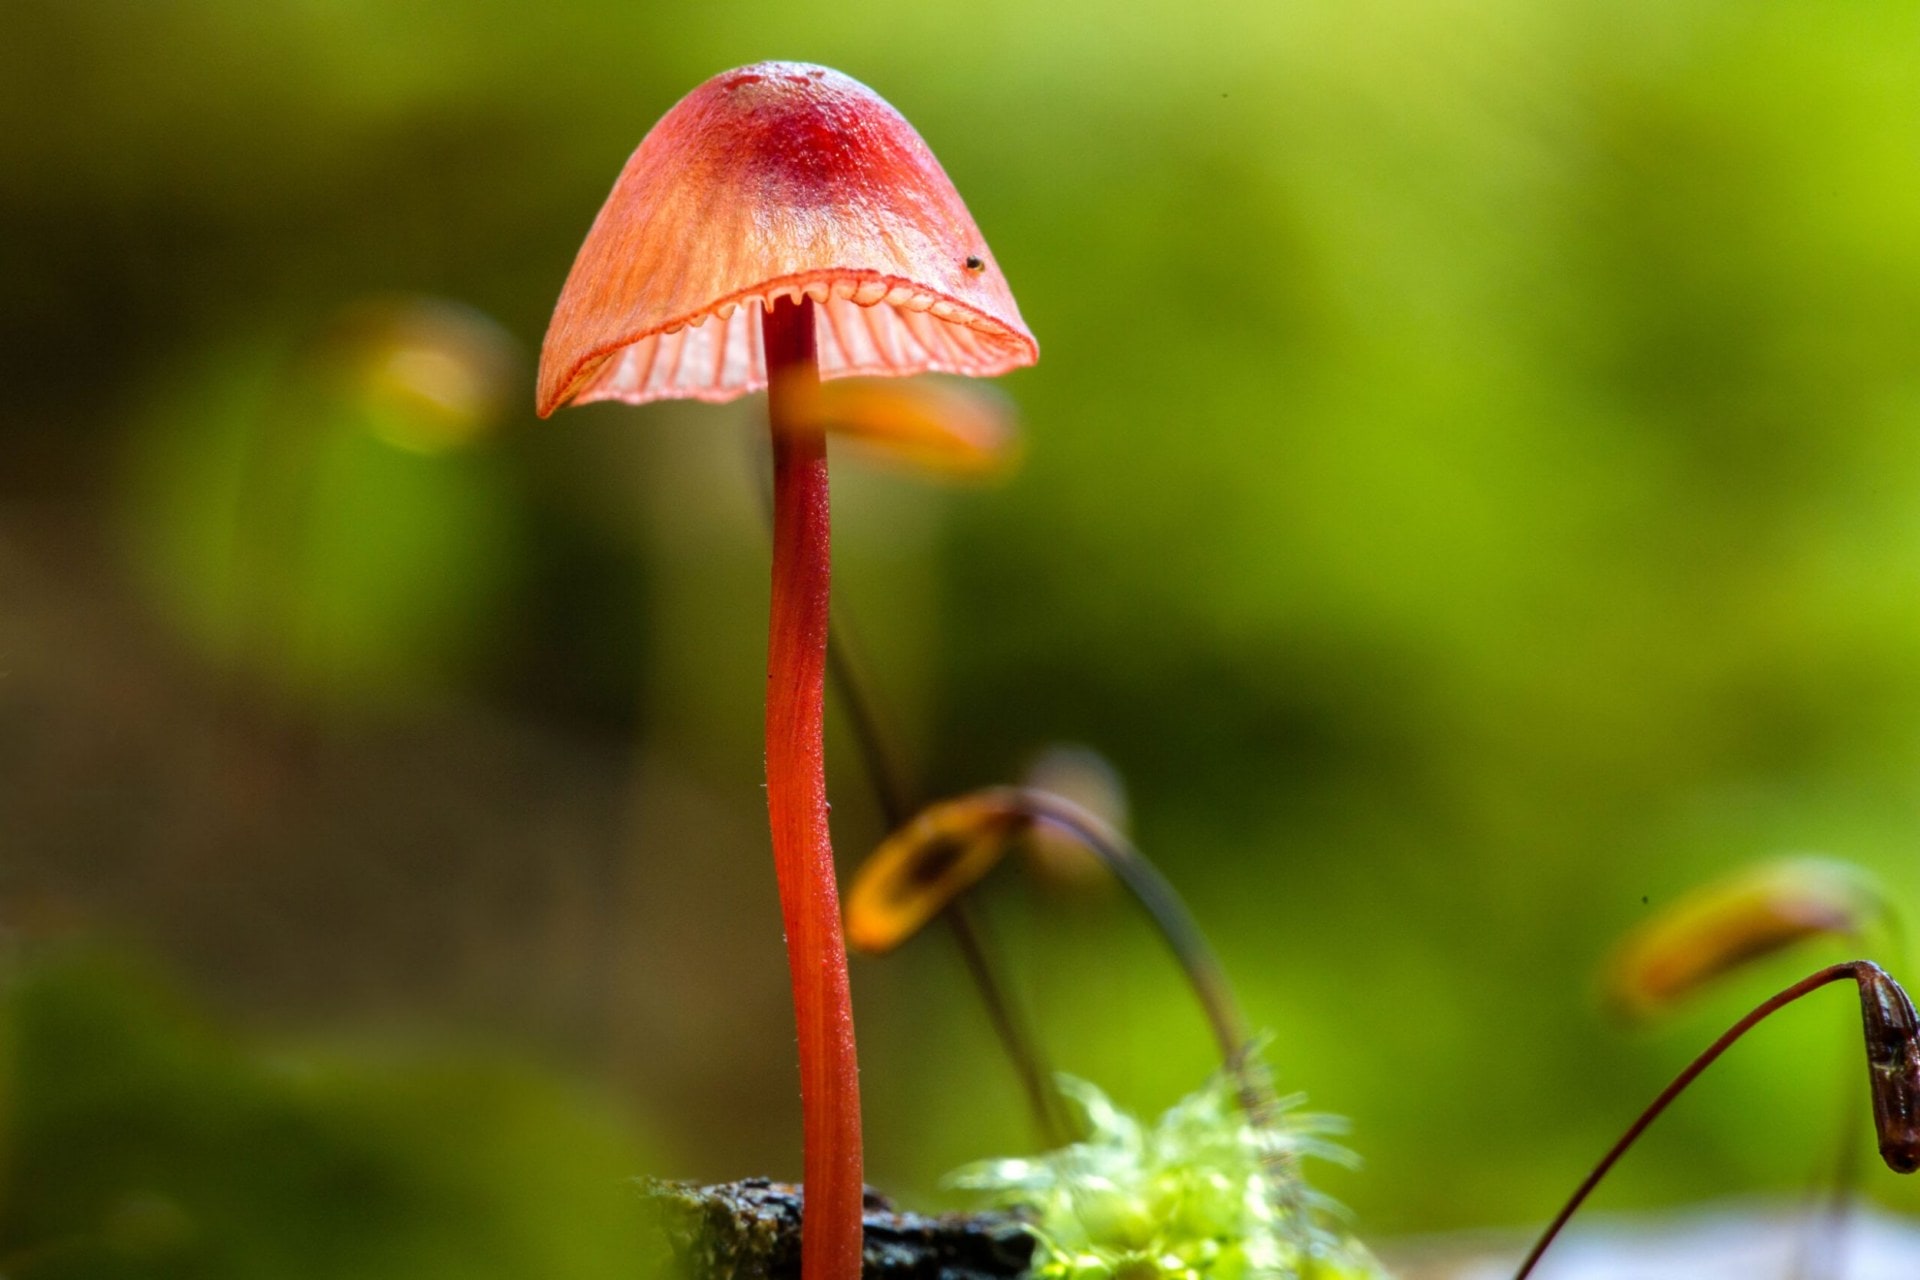 A bright red translucent mushroom